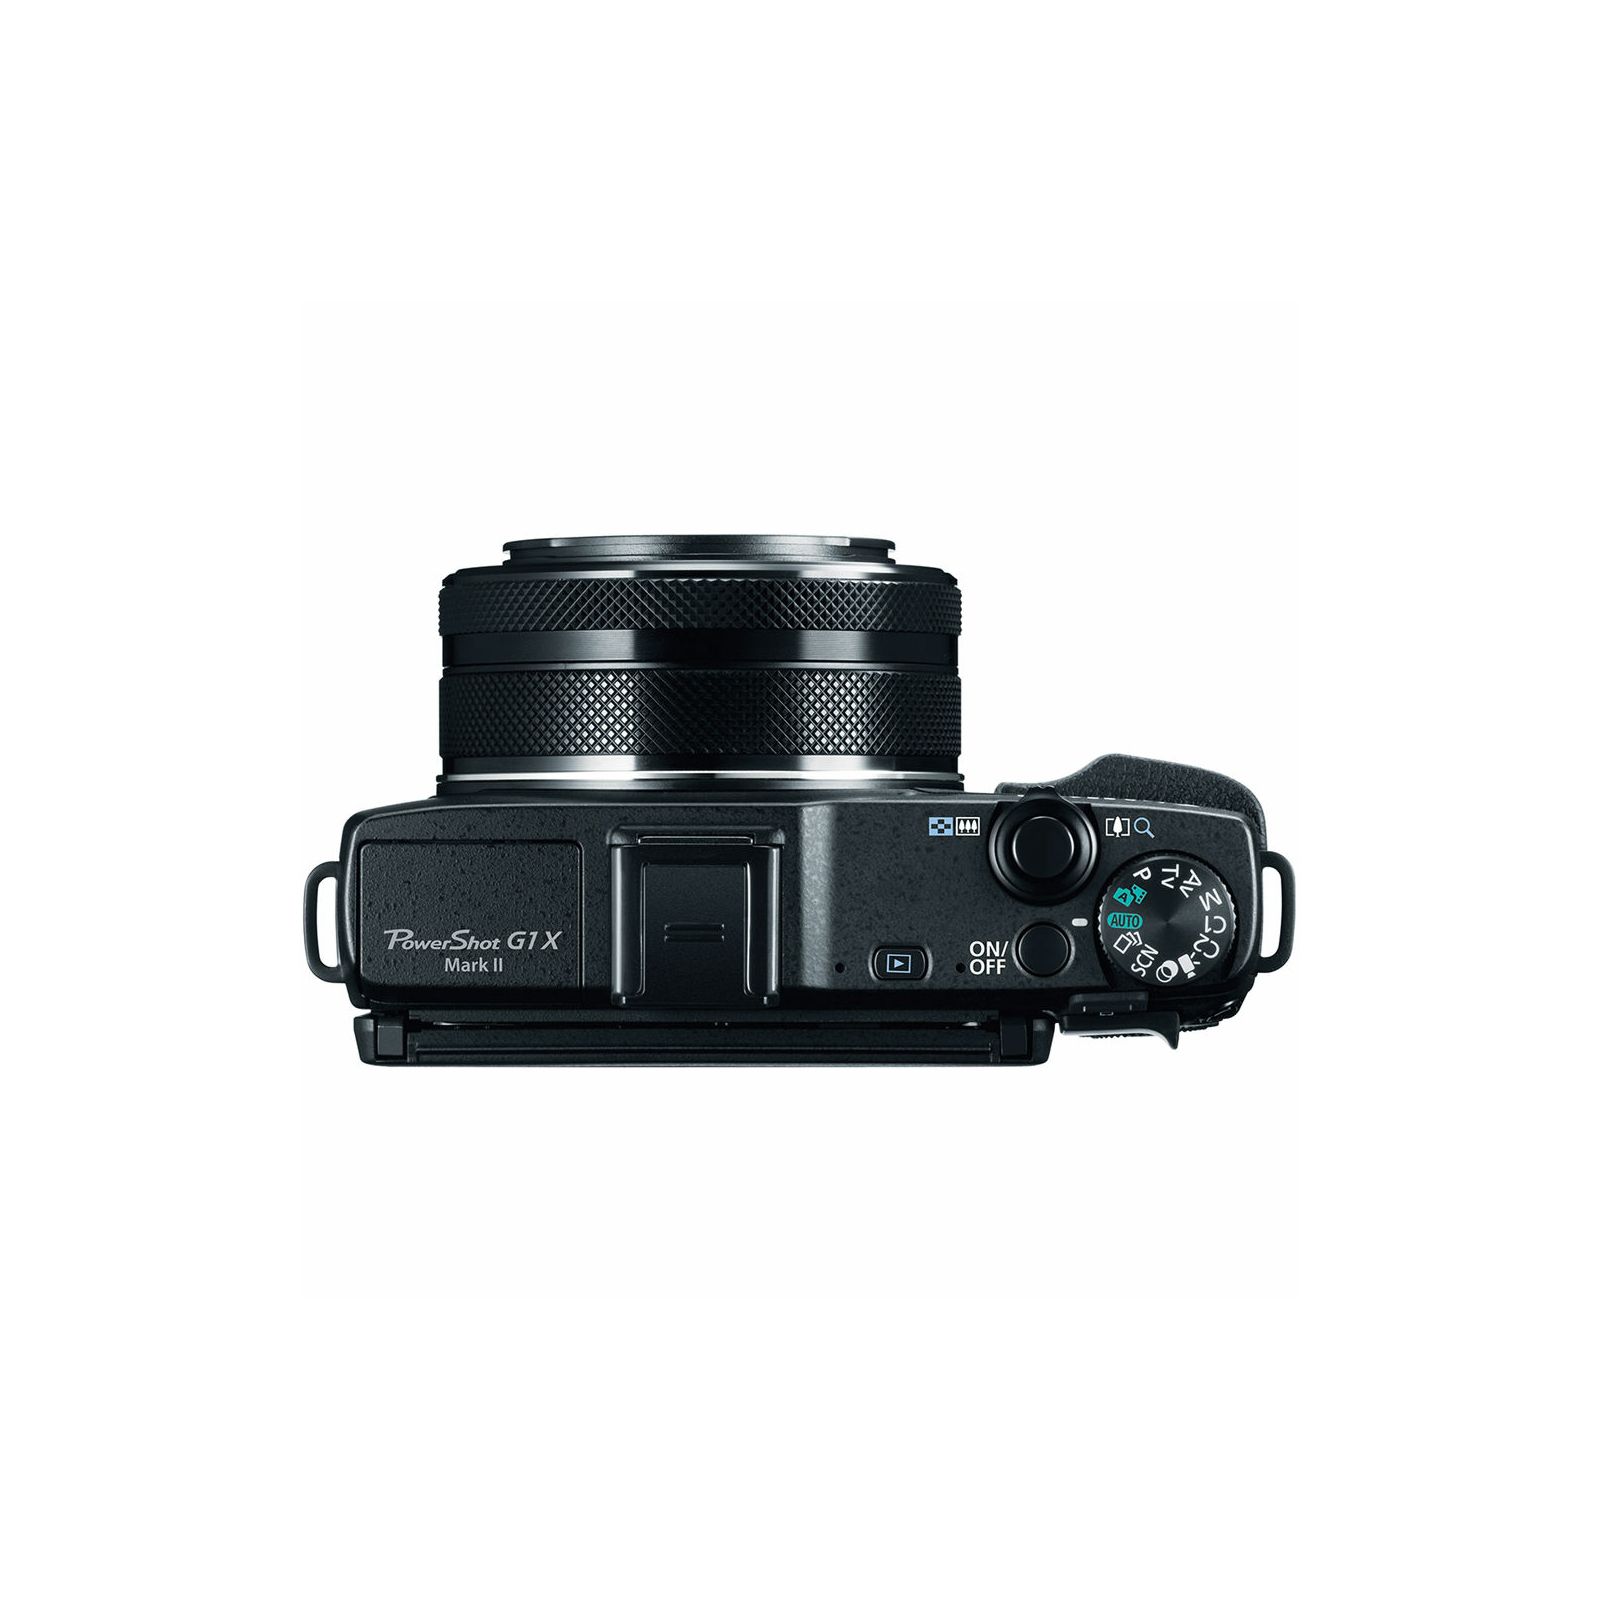 Canon Powershot G1x II kompaktni digitalni fotoaparat G1-x II  G1X MKII WiFi FullHD (9167B002AA) 